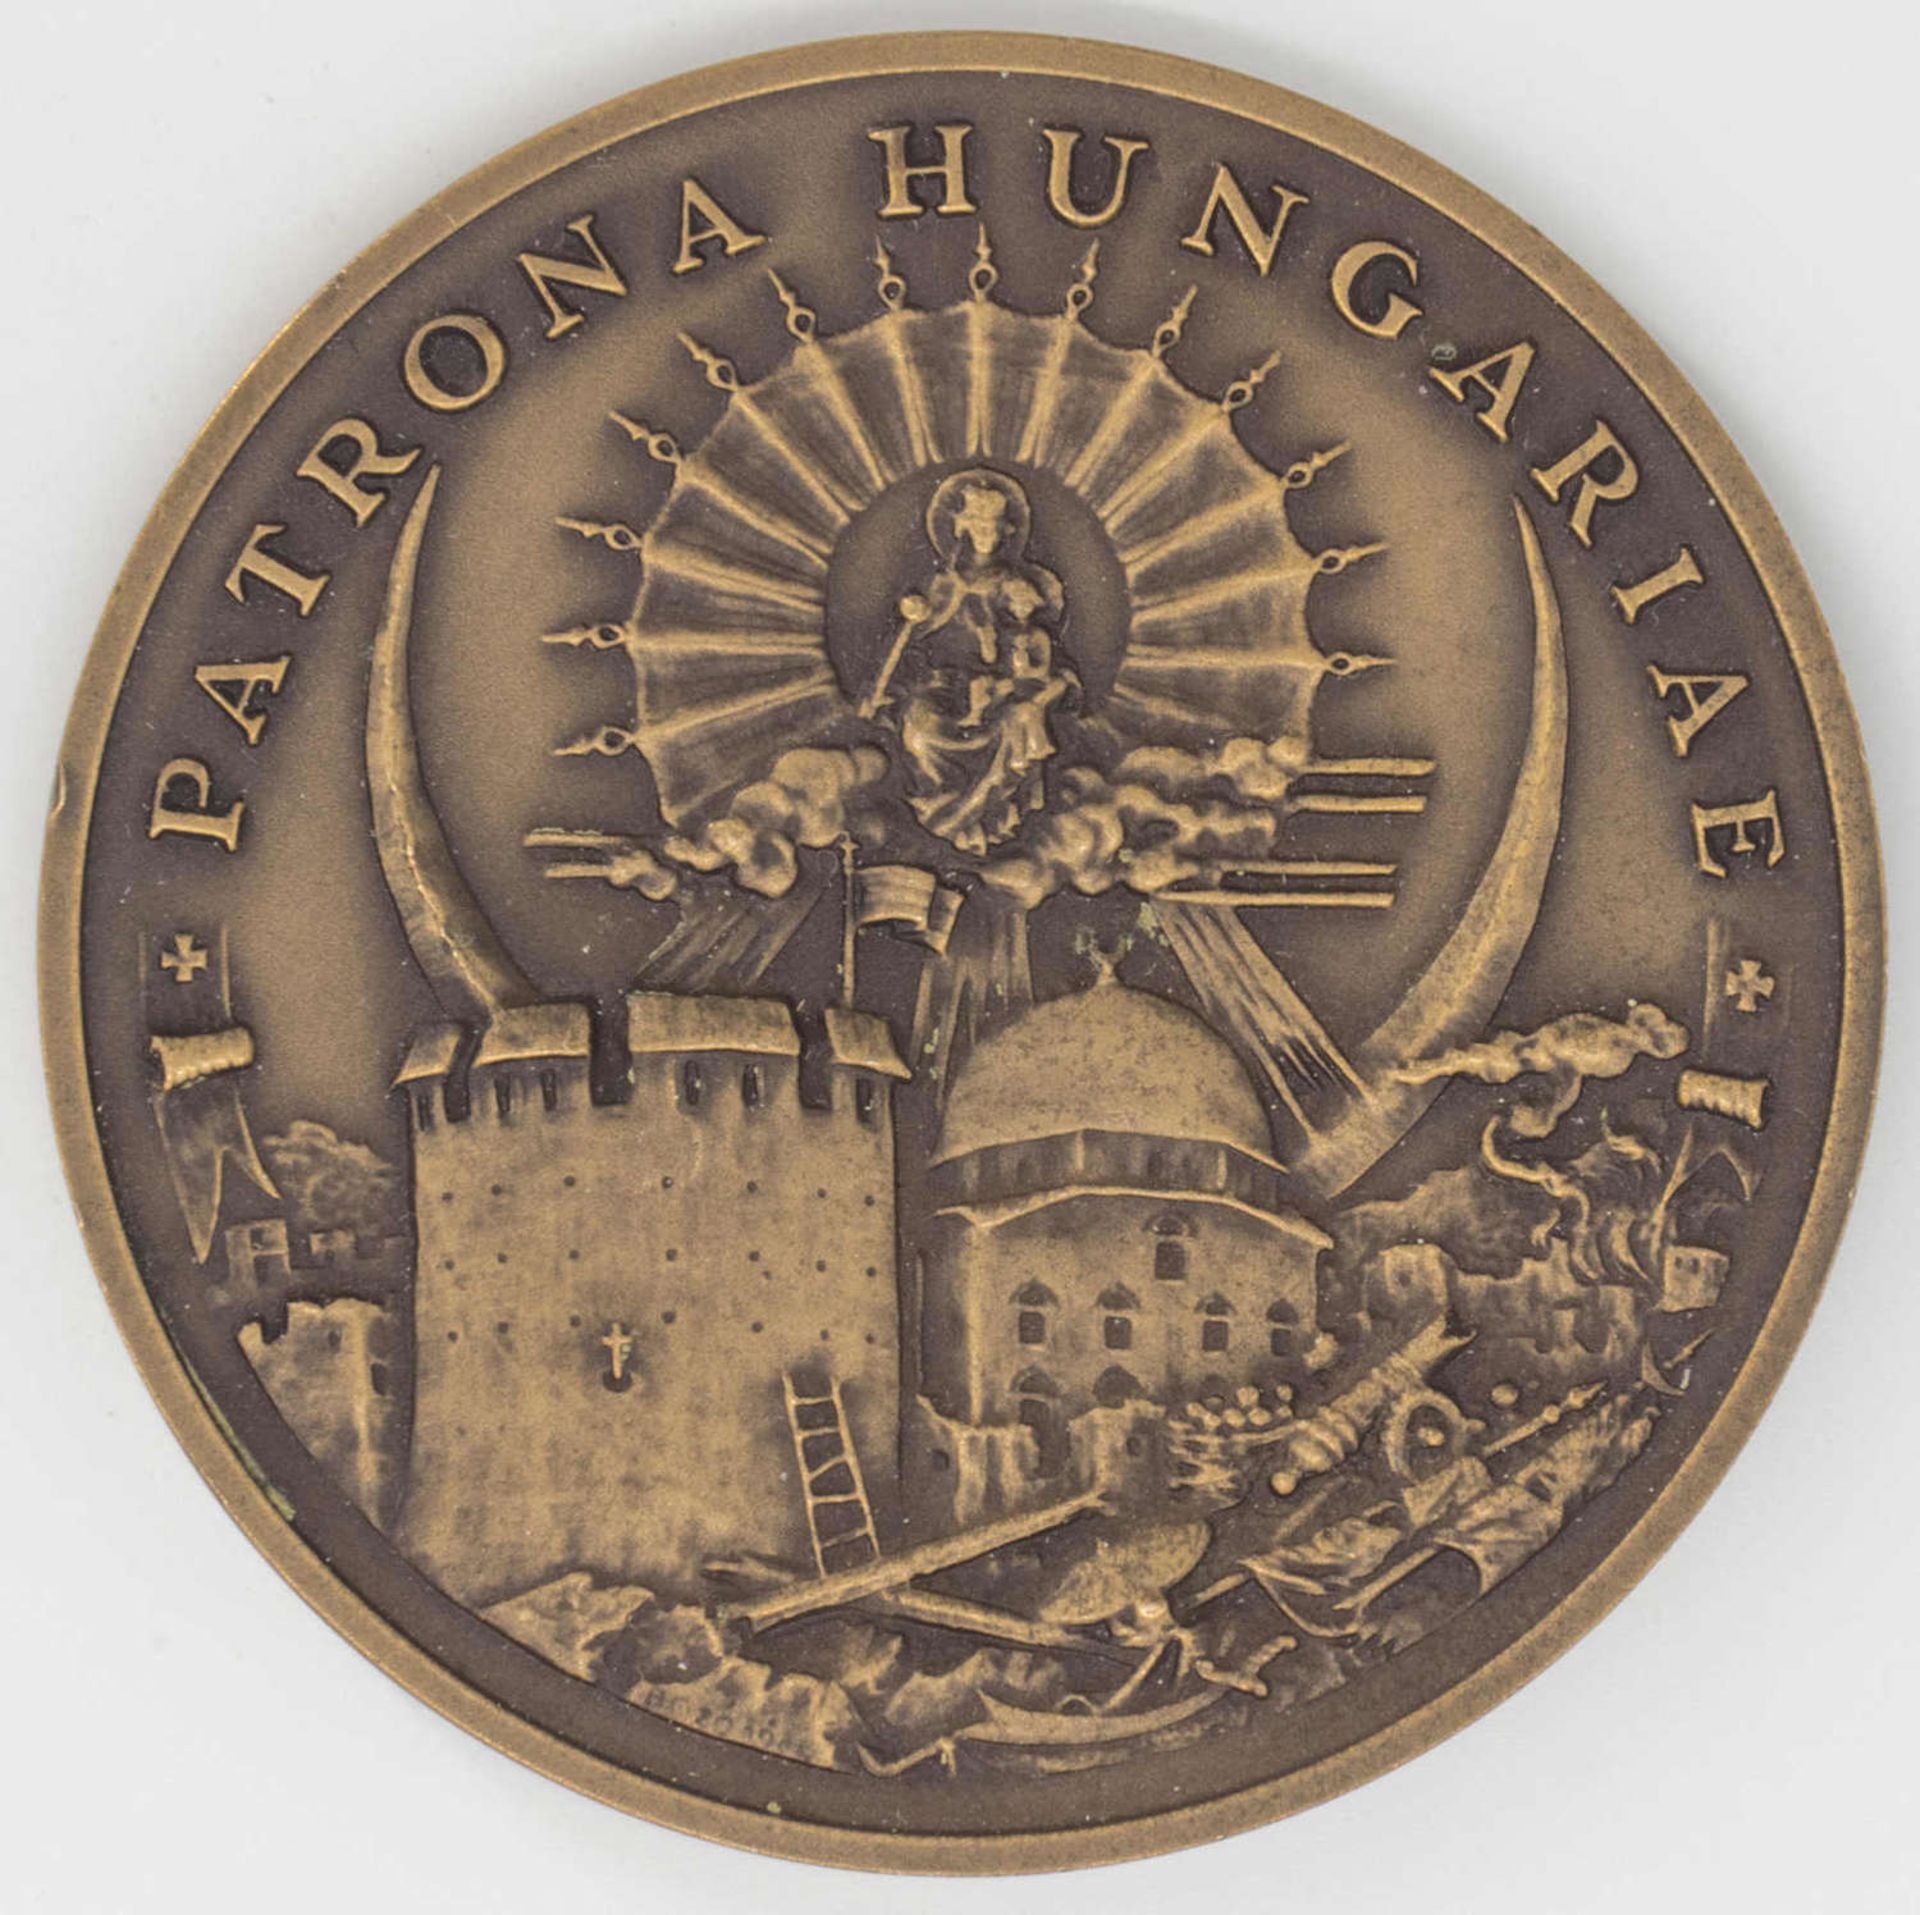 Ungarn 1986, Medaille "300 Befreiung von der türkischen Besatzung". Bronze, Durchmesser. ca. 70 - Bild 2 aus 2